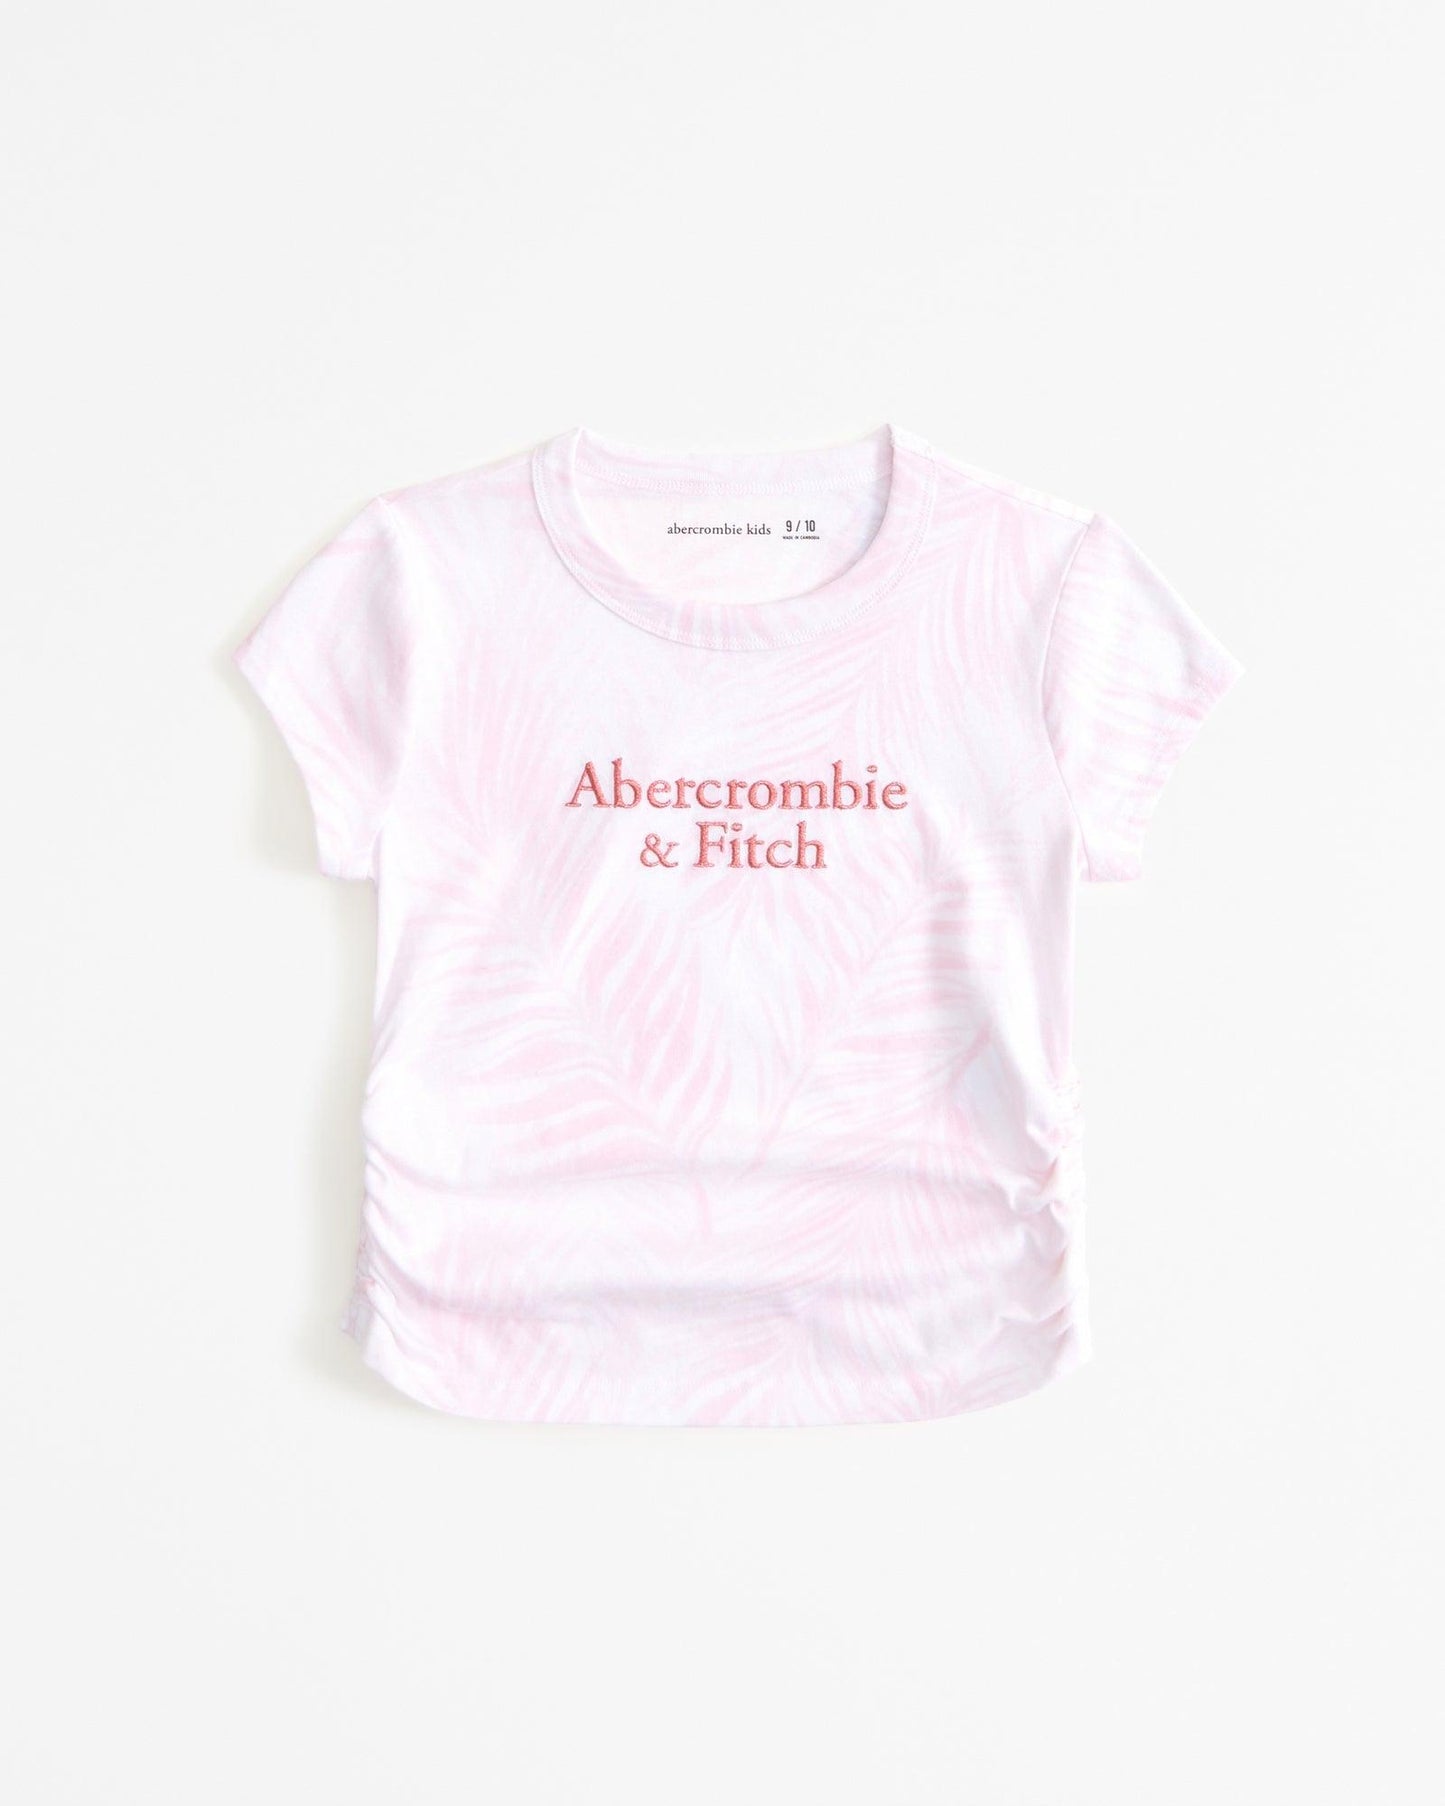 Abercrombie & Fitch camiseta estampada com logo e franzido lateral